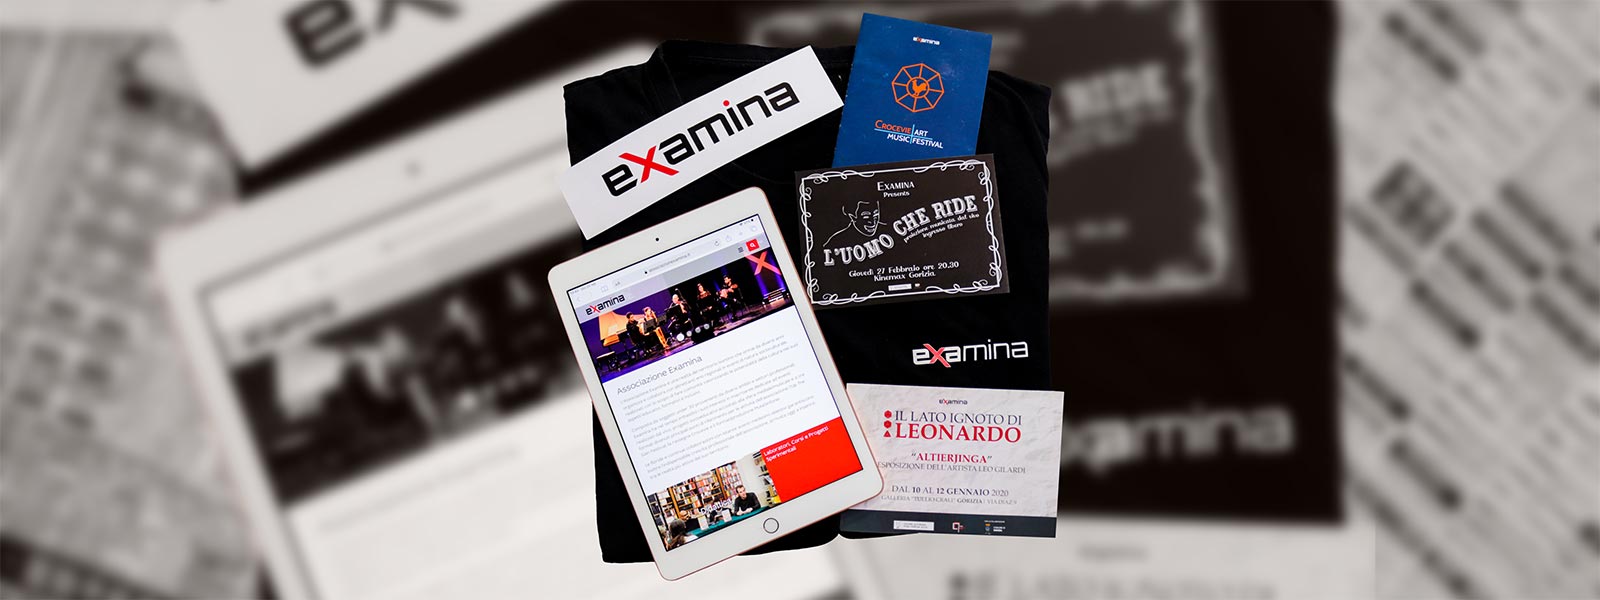 T-shirt, gadget e volantini degli eventi organizzati dall'Associazione Examina.